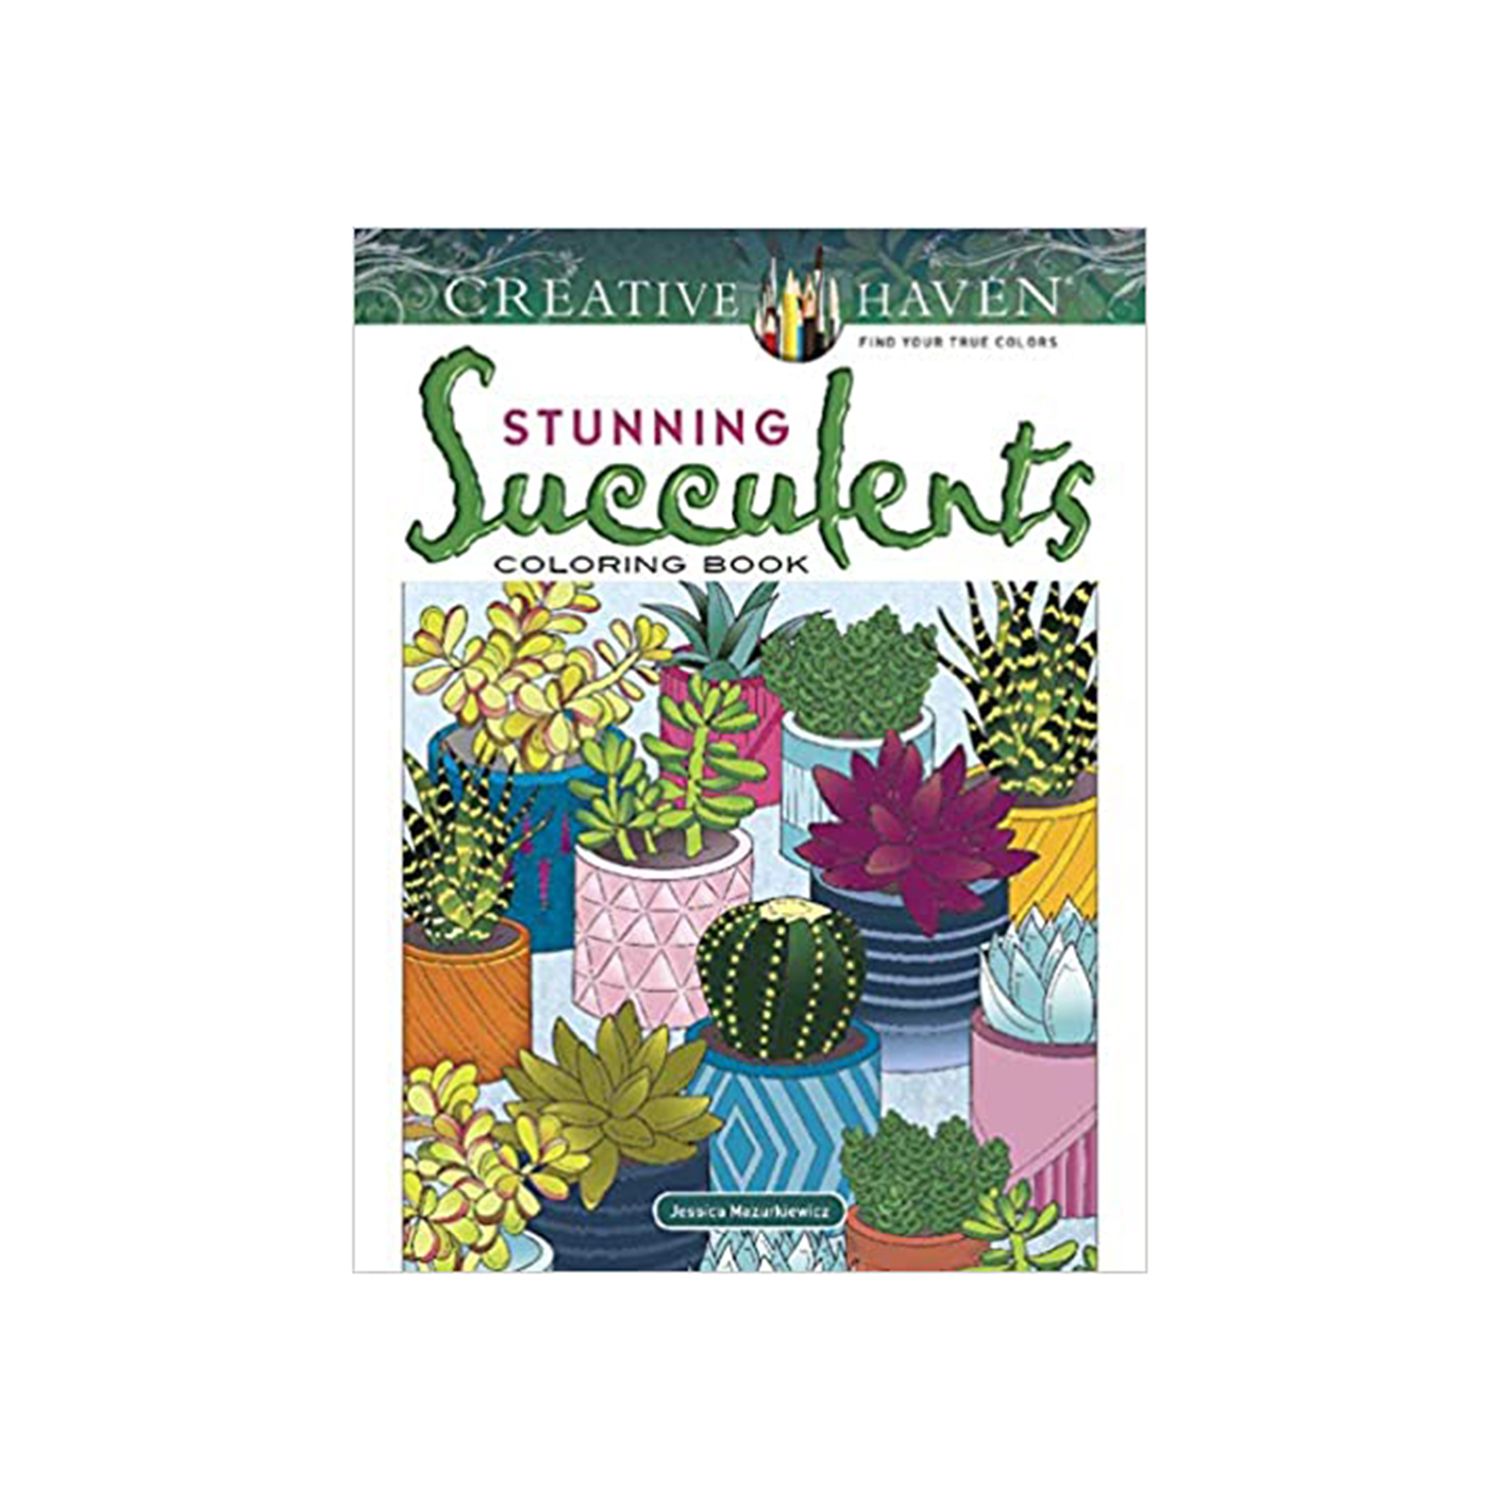 Creative Haven Impresionante libro para colorear de suculentas